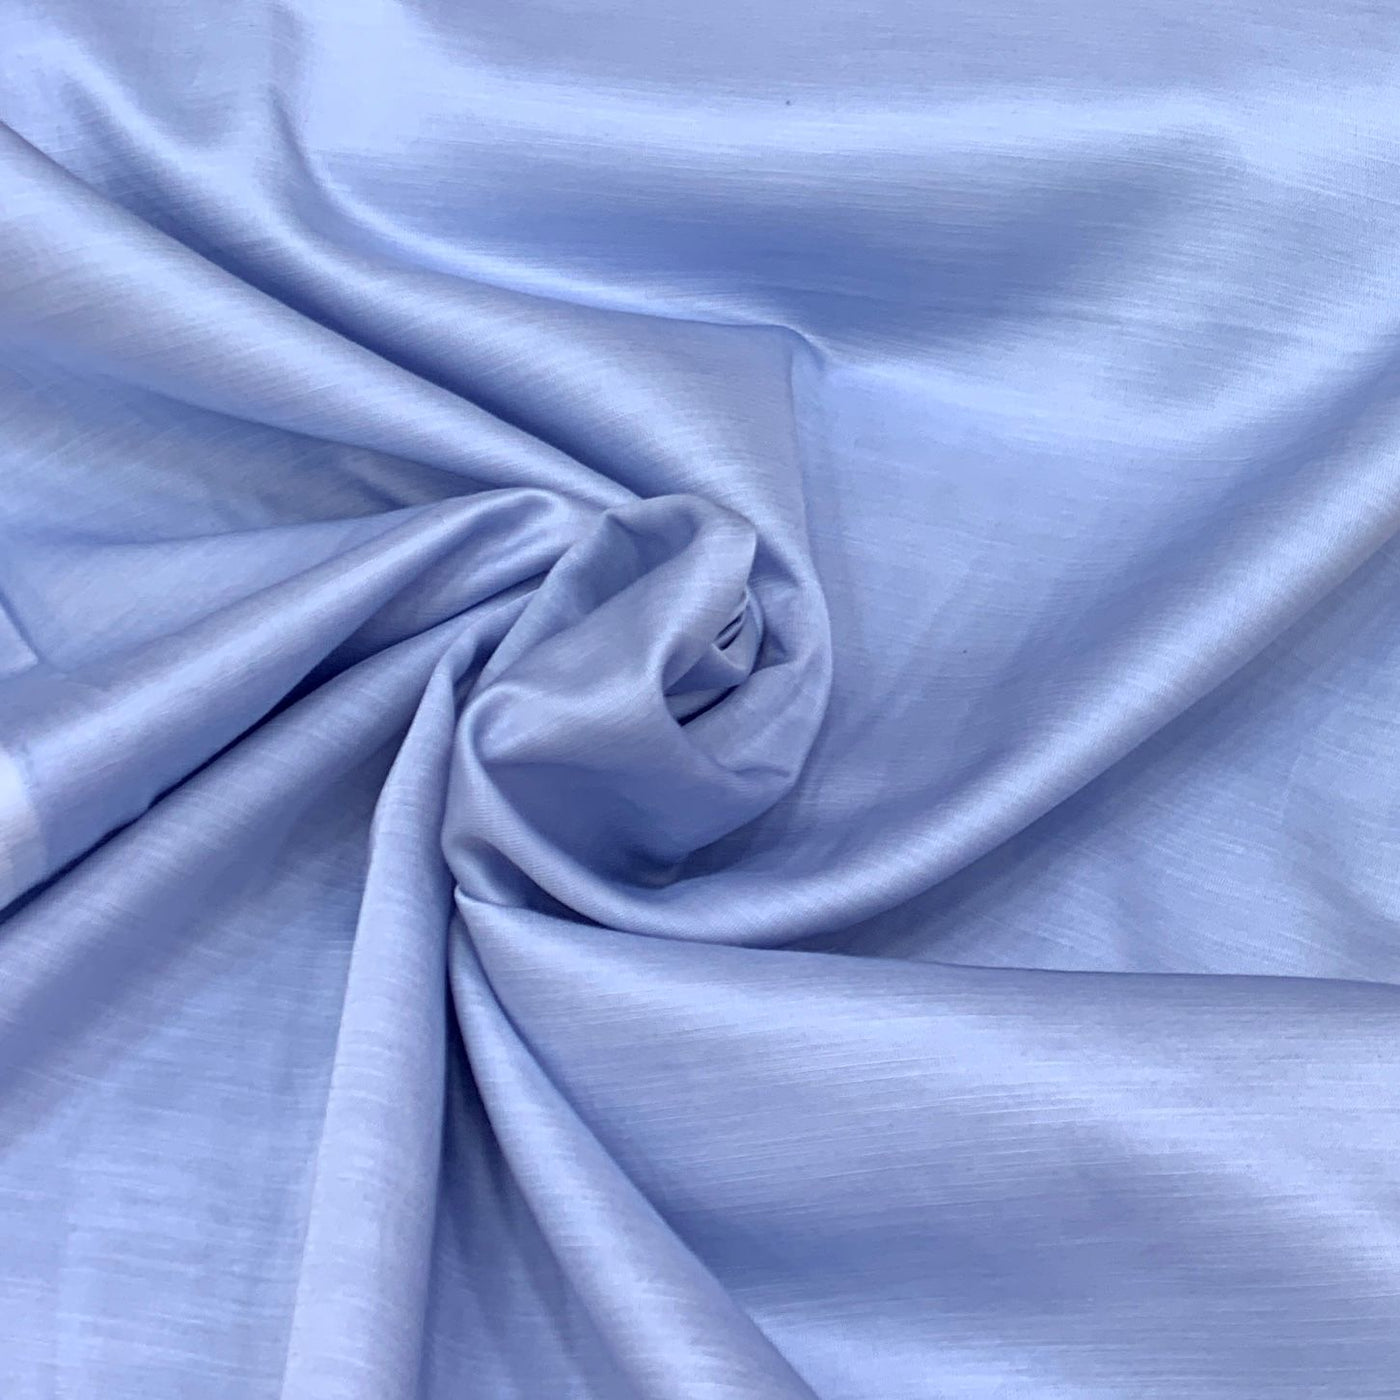 Light Blue Plain Satin Linen Fabric